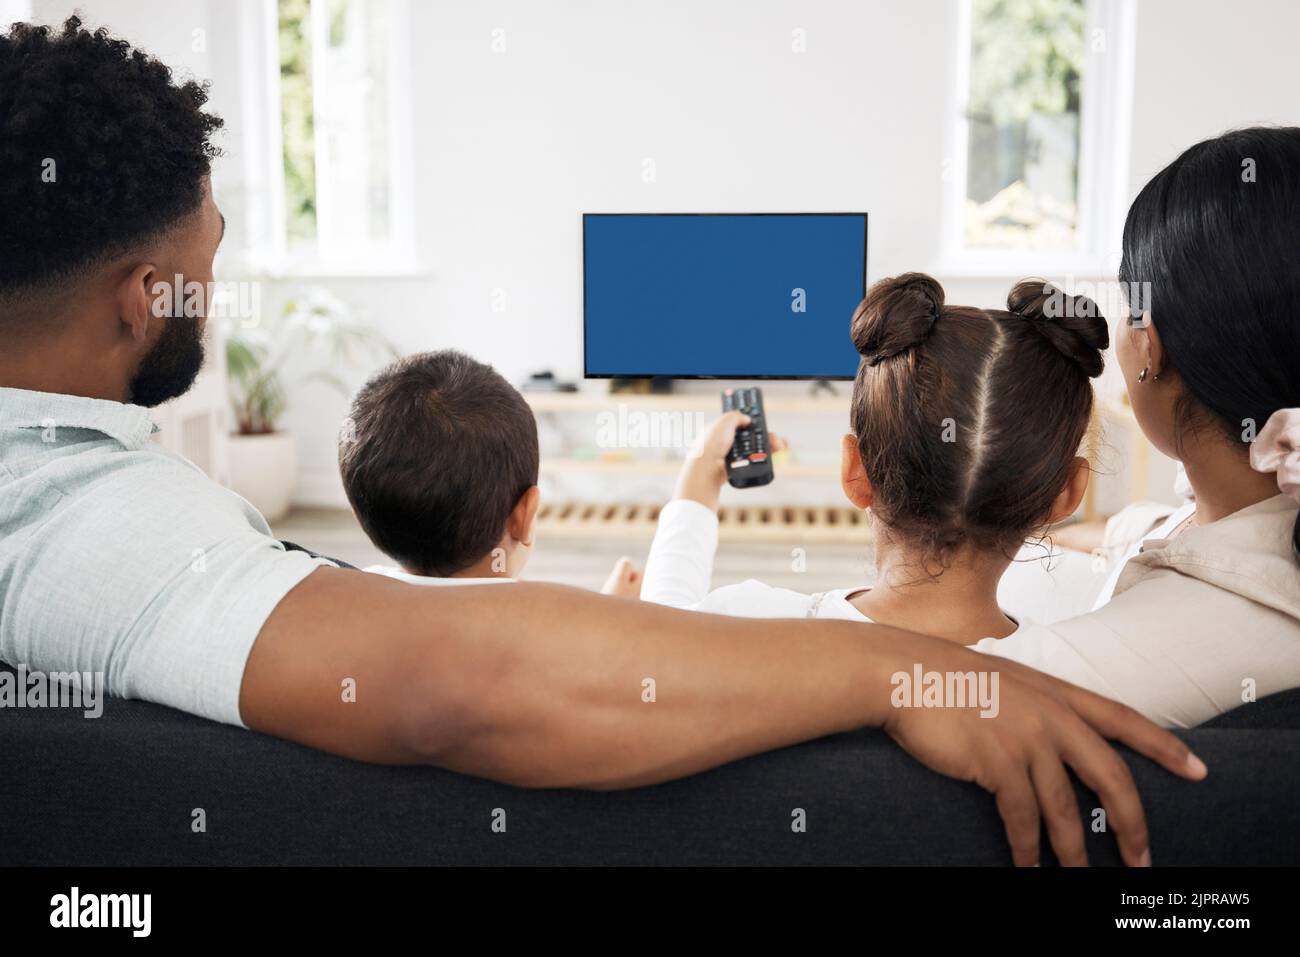 Blauer Bildschirm, Chroma-Key-fernseher mit entspannter Familienwiedergabe und Videostreaming, Serien und Entertainment-Kopierbereich. Rückansicht von Eltern und Kindern Stockfoto